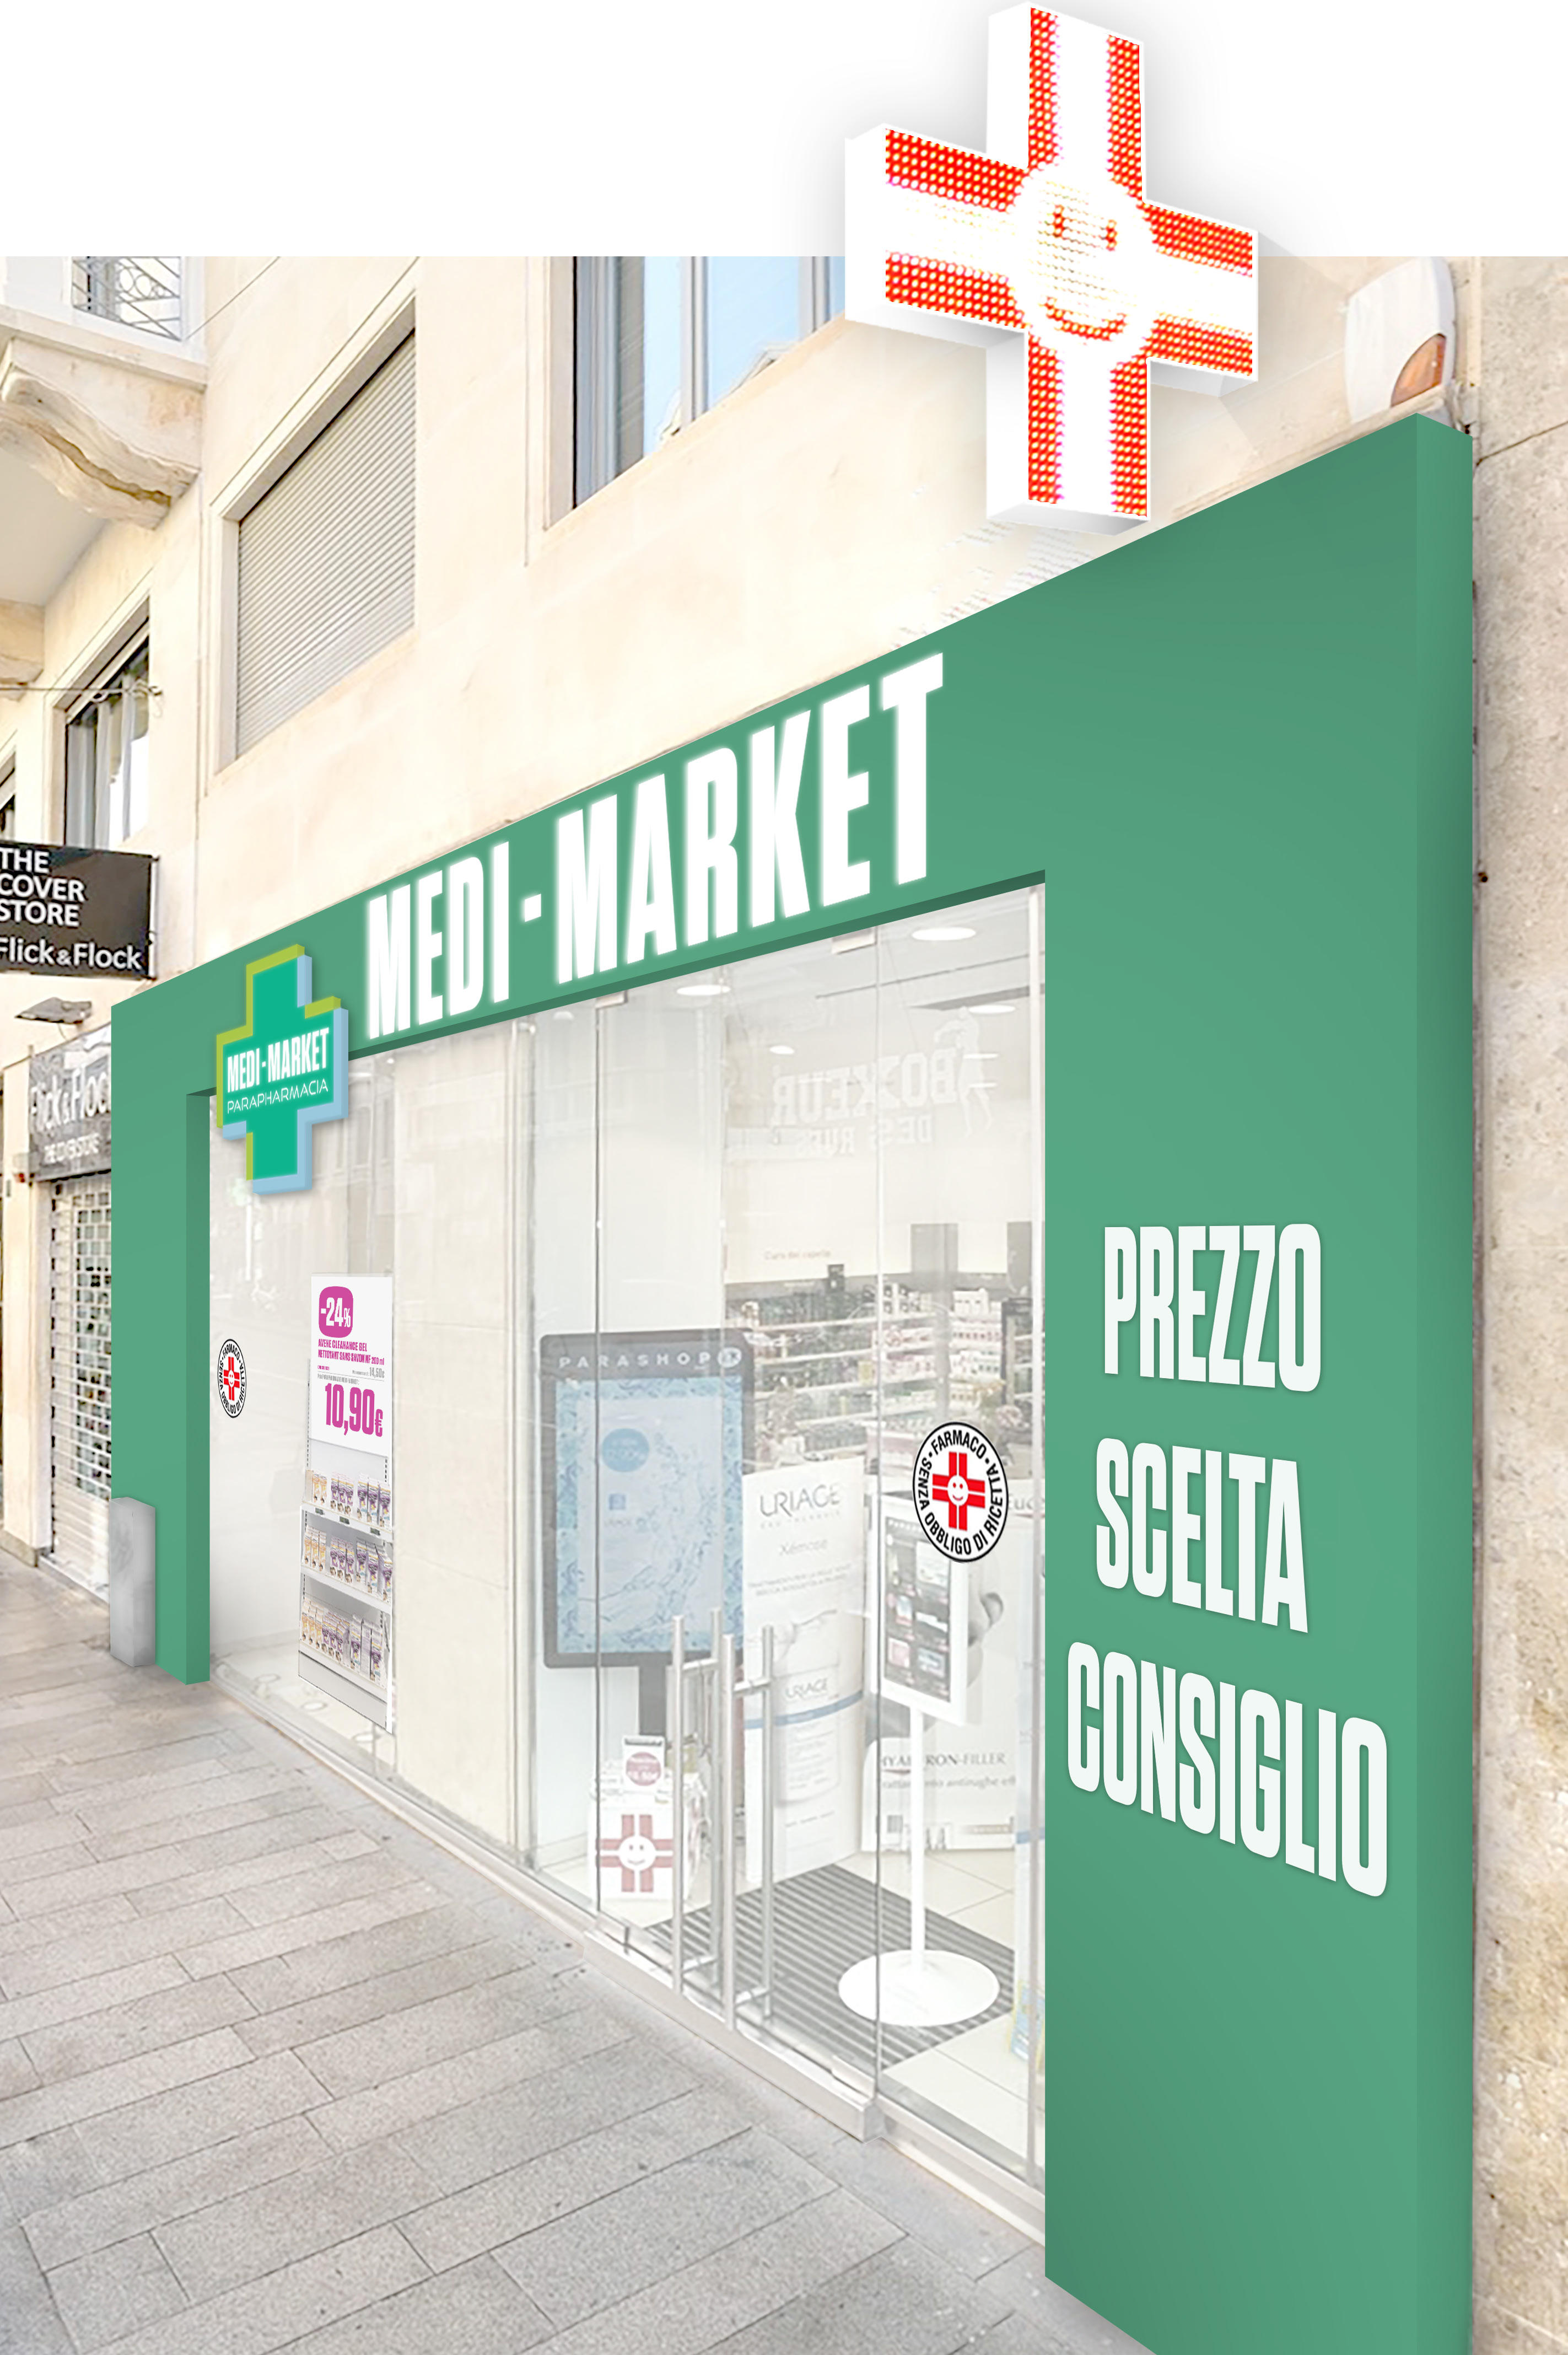 Medi-Market Italia completa il suo progetto di rebranding, portando ad insegna “Medi-Market”  anche l’ultimo punto vendita di Via Torino 51 a Milano 